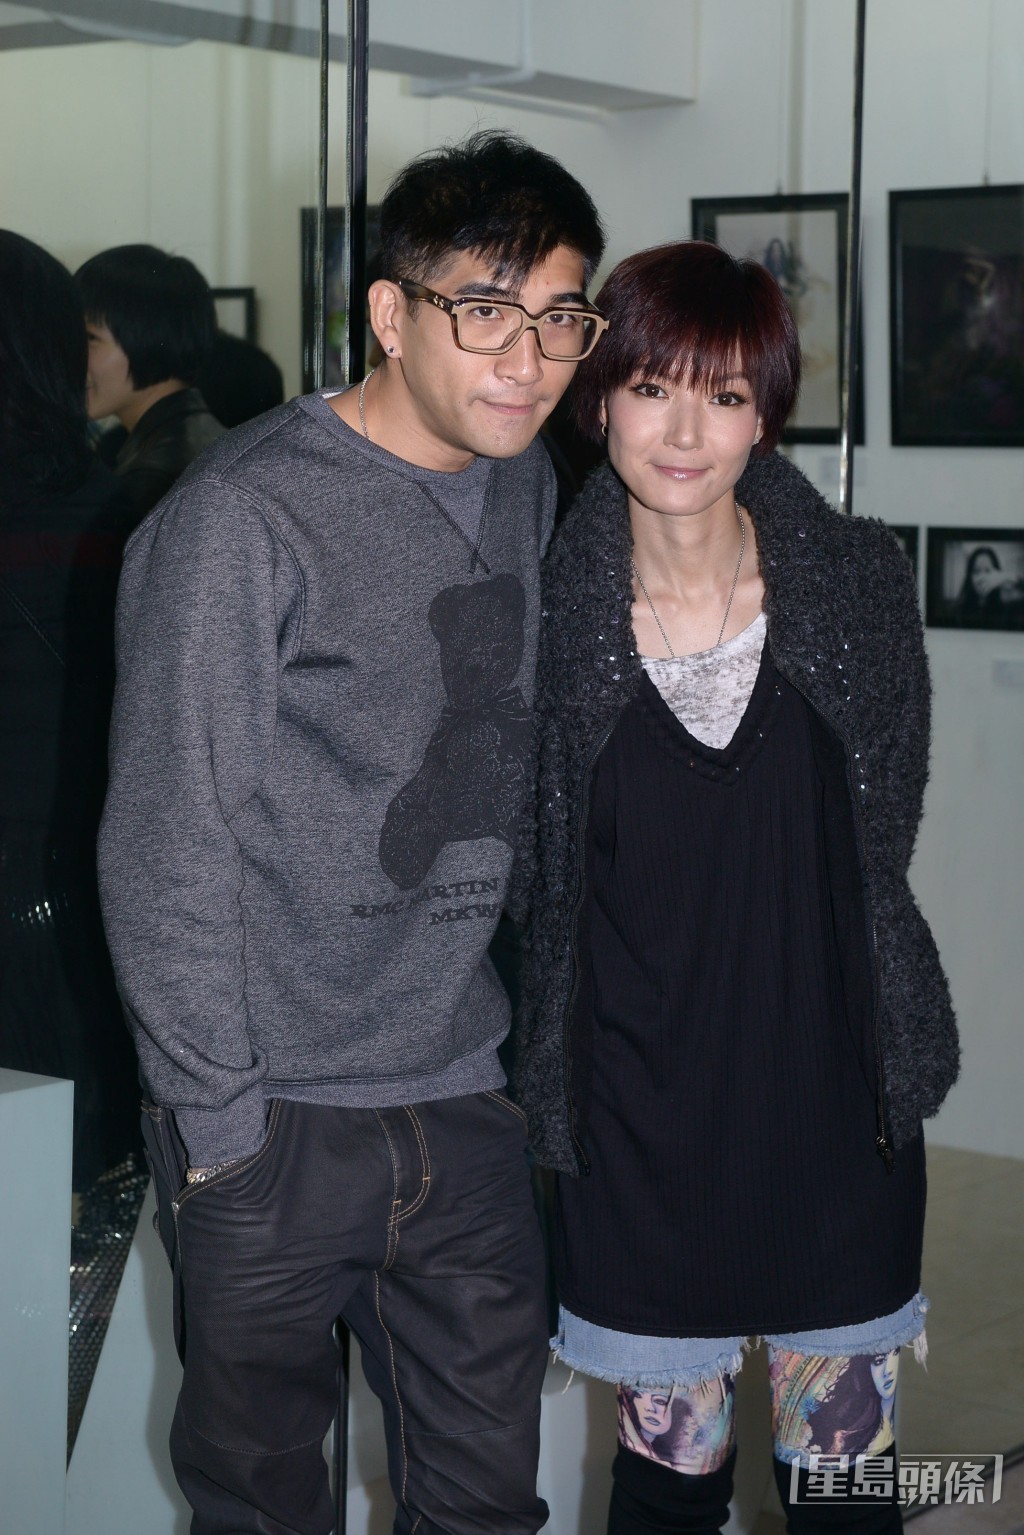 盧巧音在2013年與Kolor主音Sammy蘇浩才結婚。